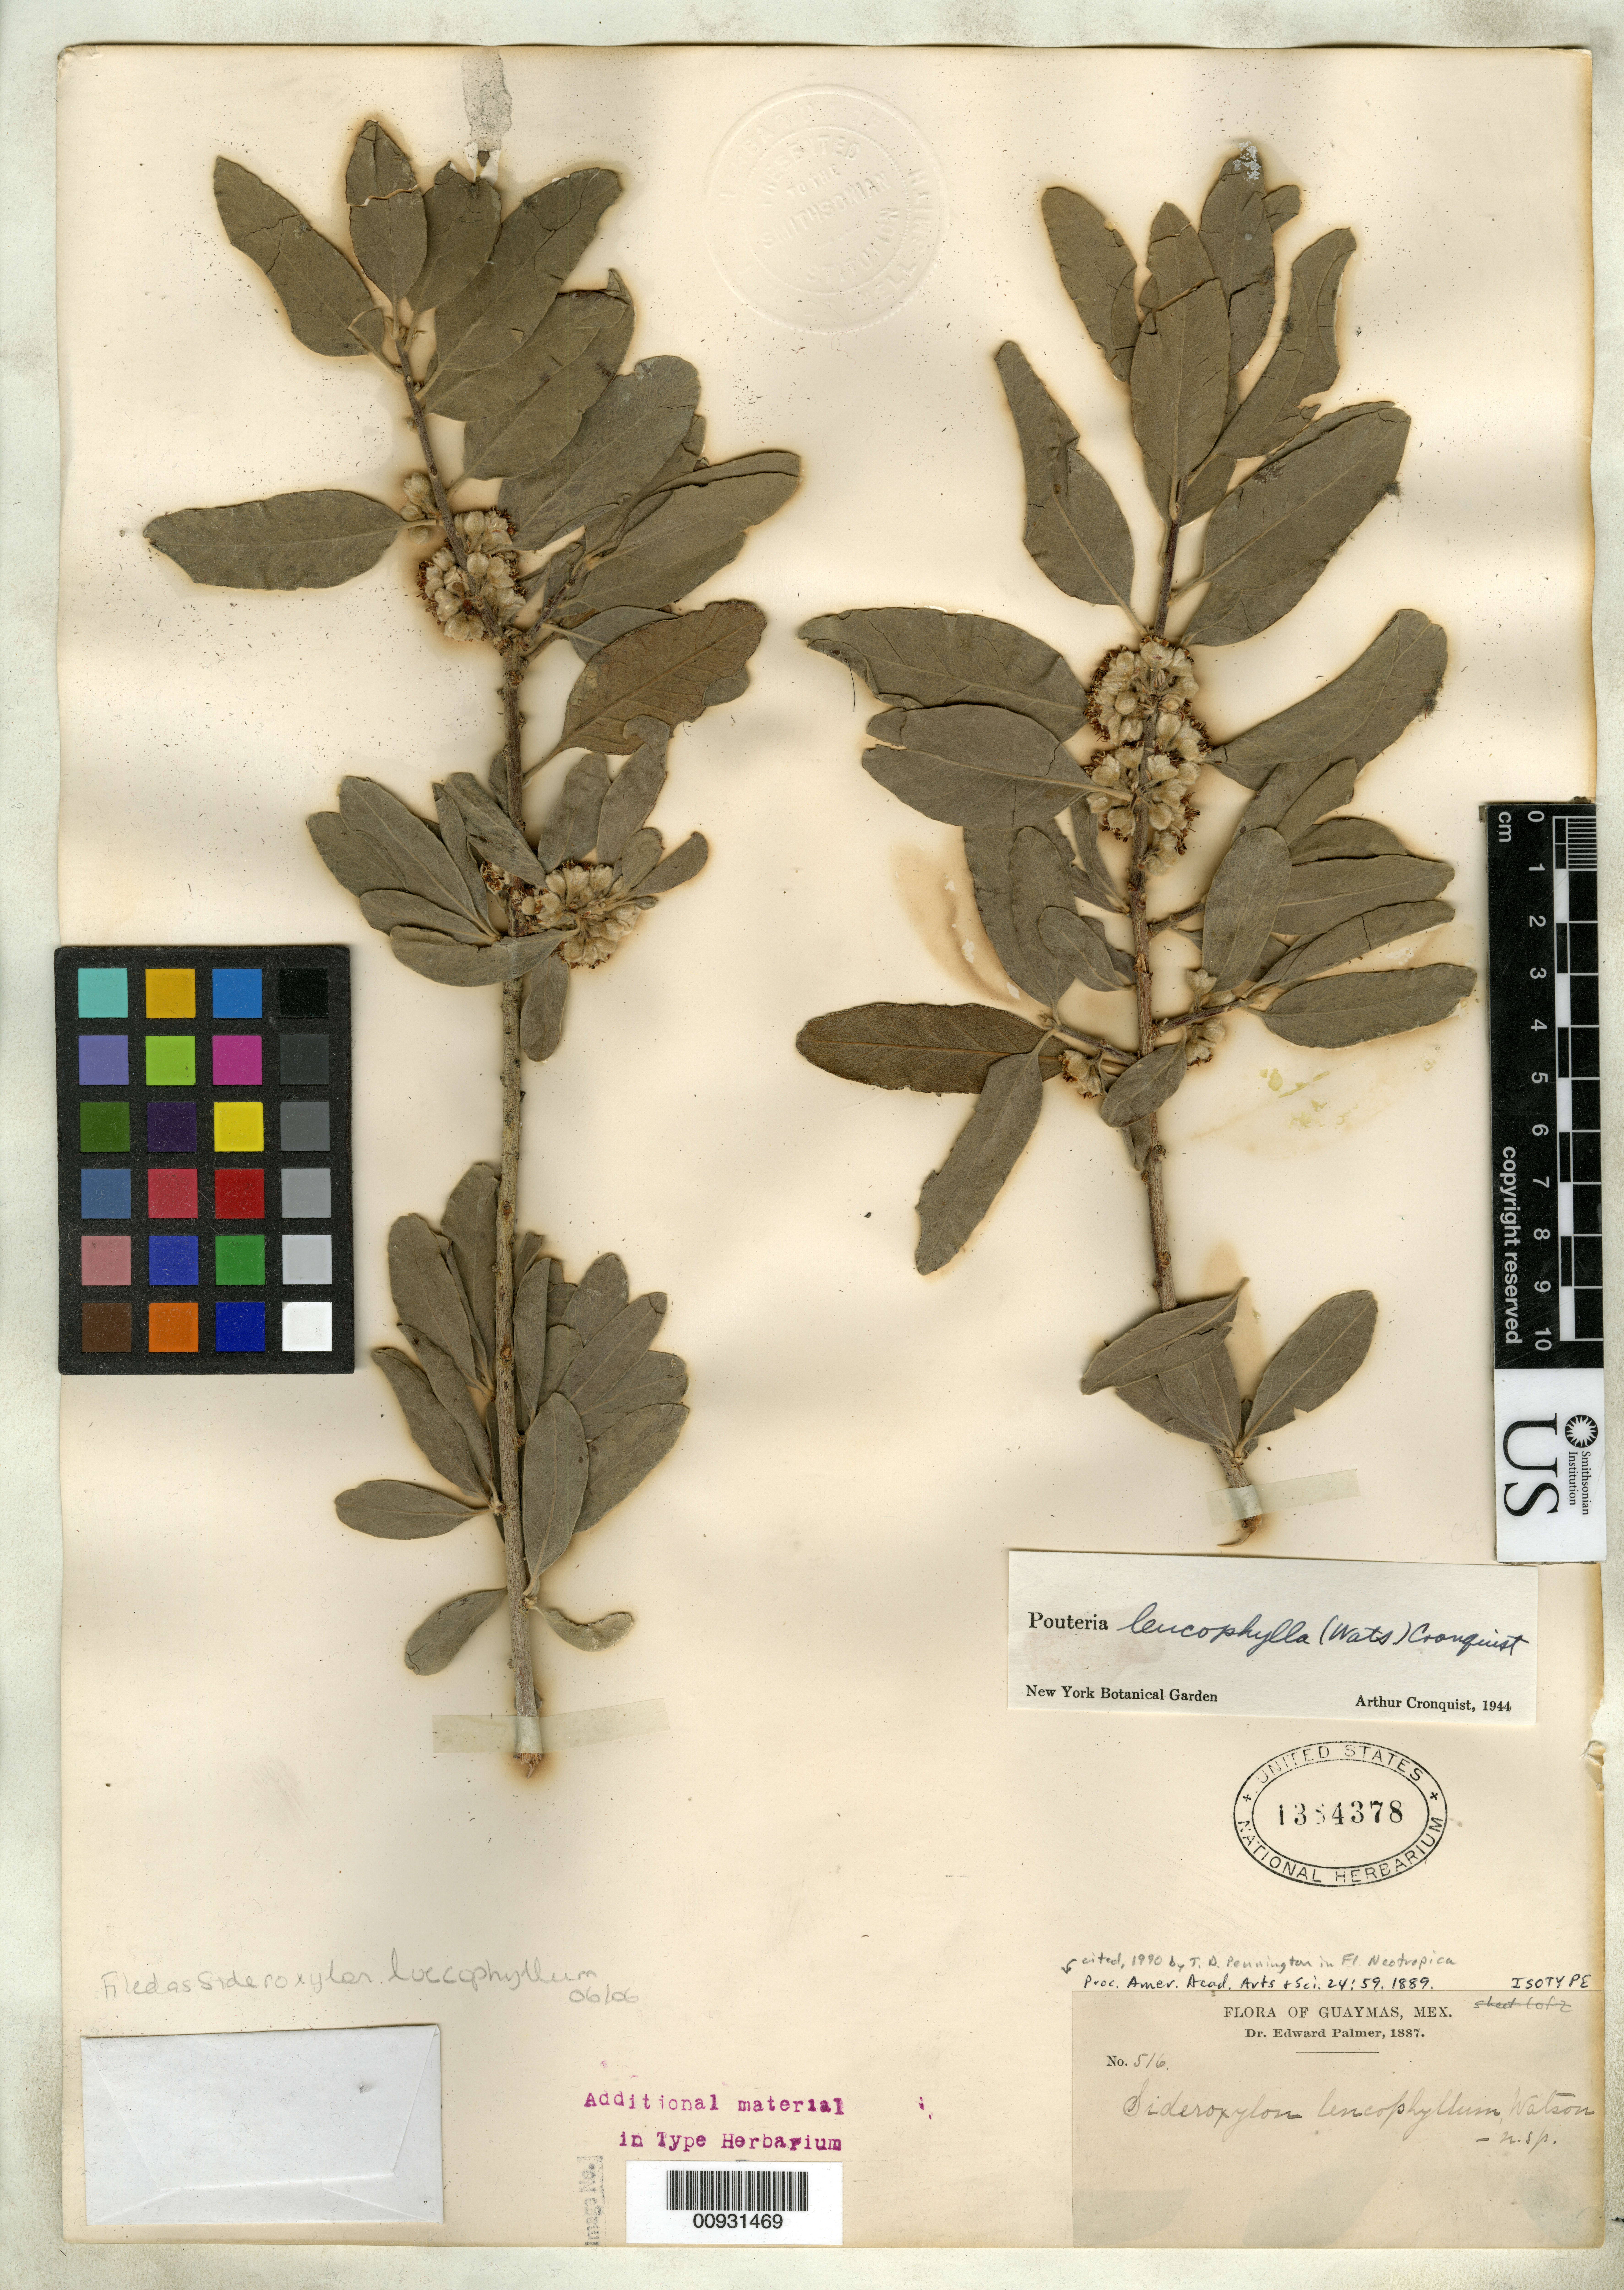 Sivun Sideroxylon leucophyllum S. Watson kuva